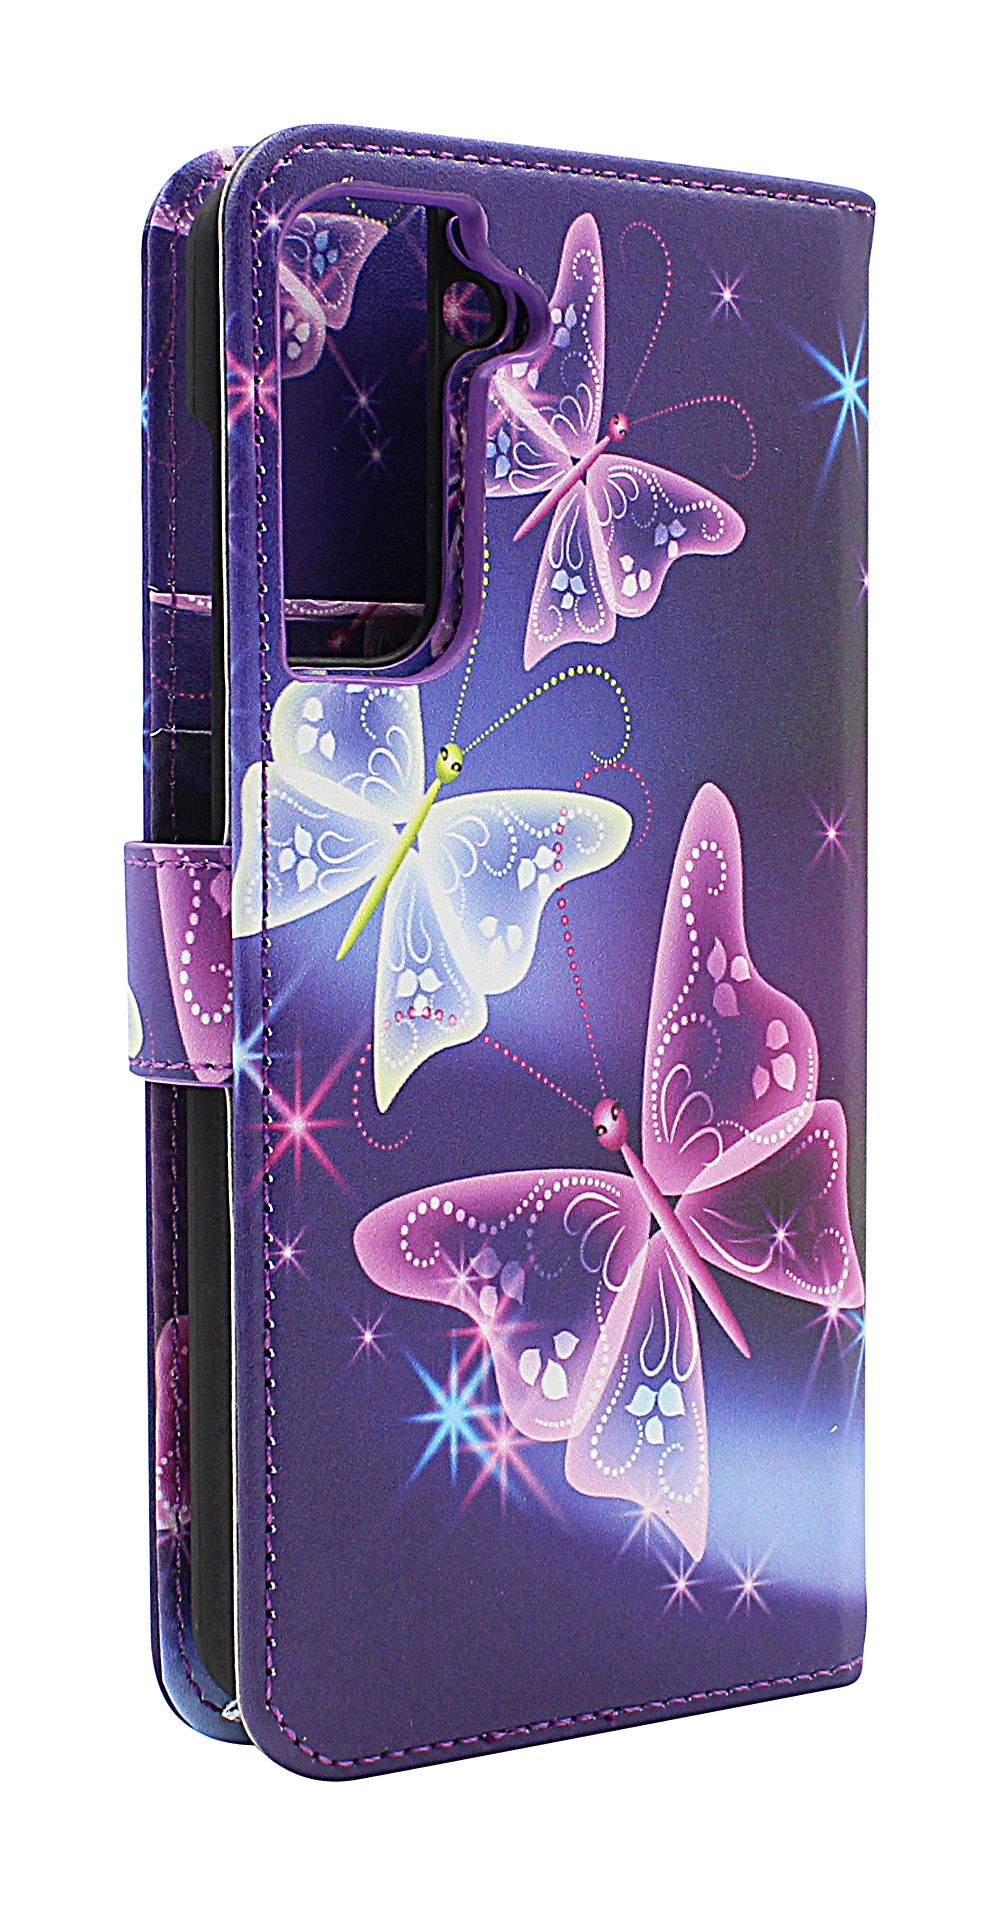 Skimblocker Magnet Designwallet Samsung Galaxy S21 FE 5G